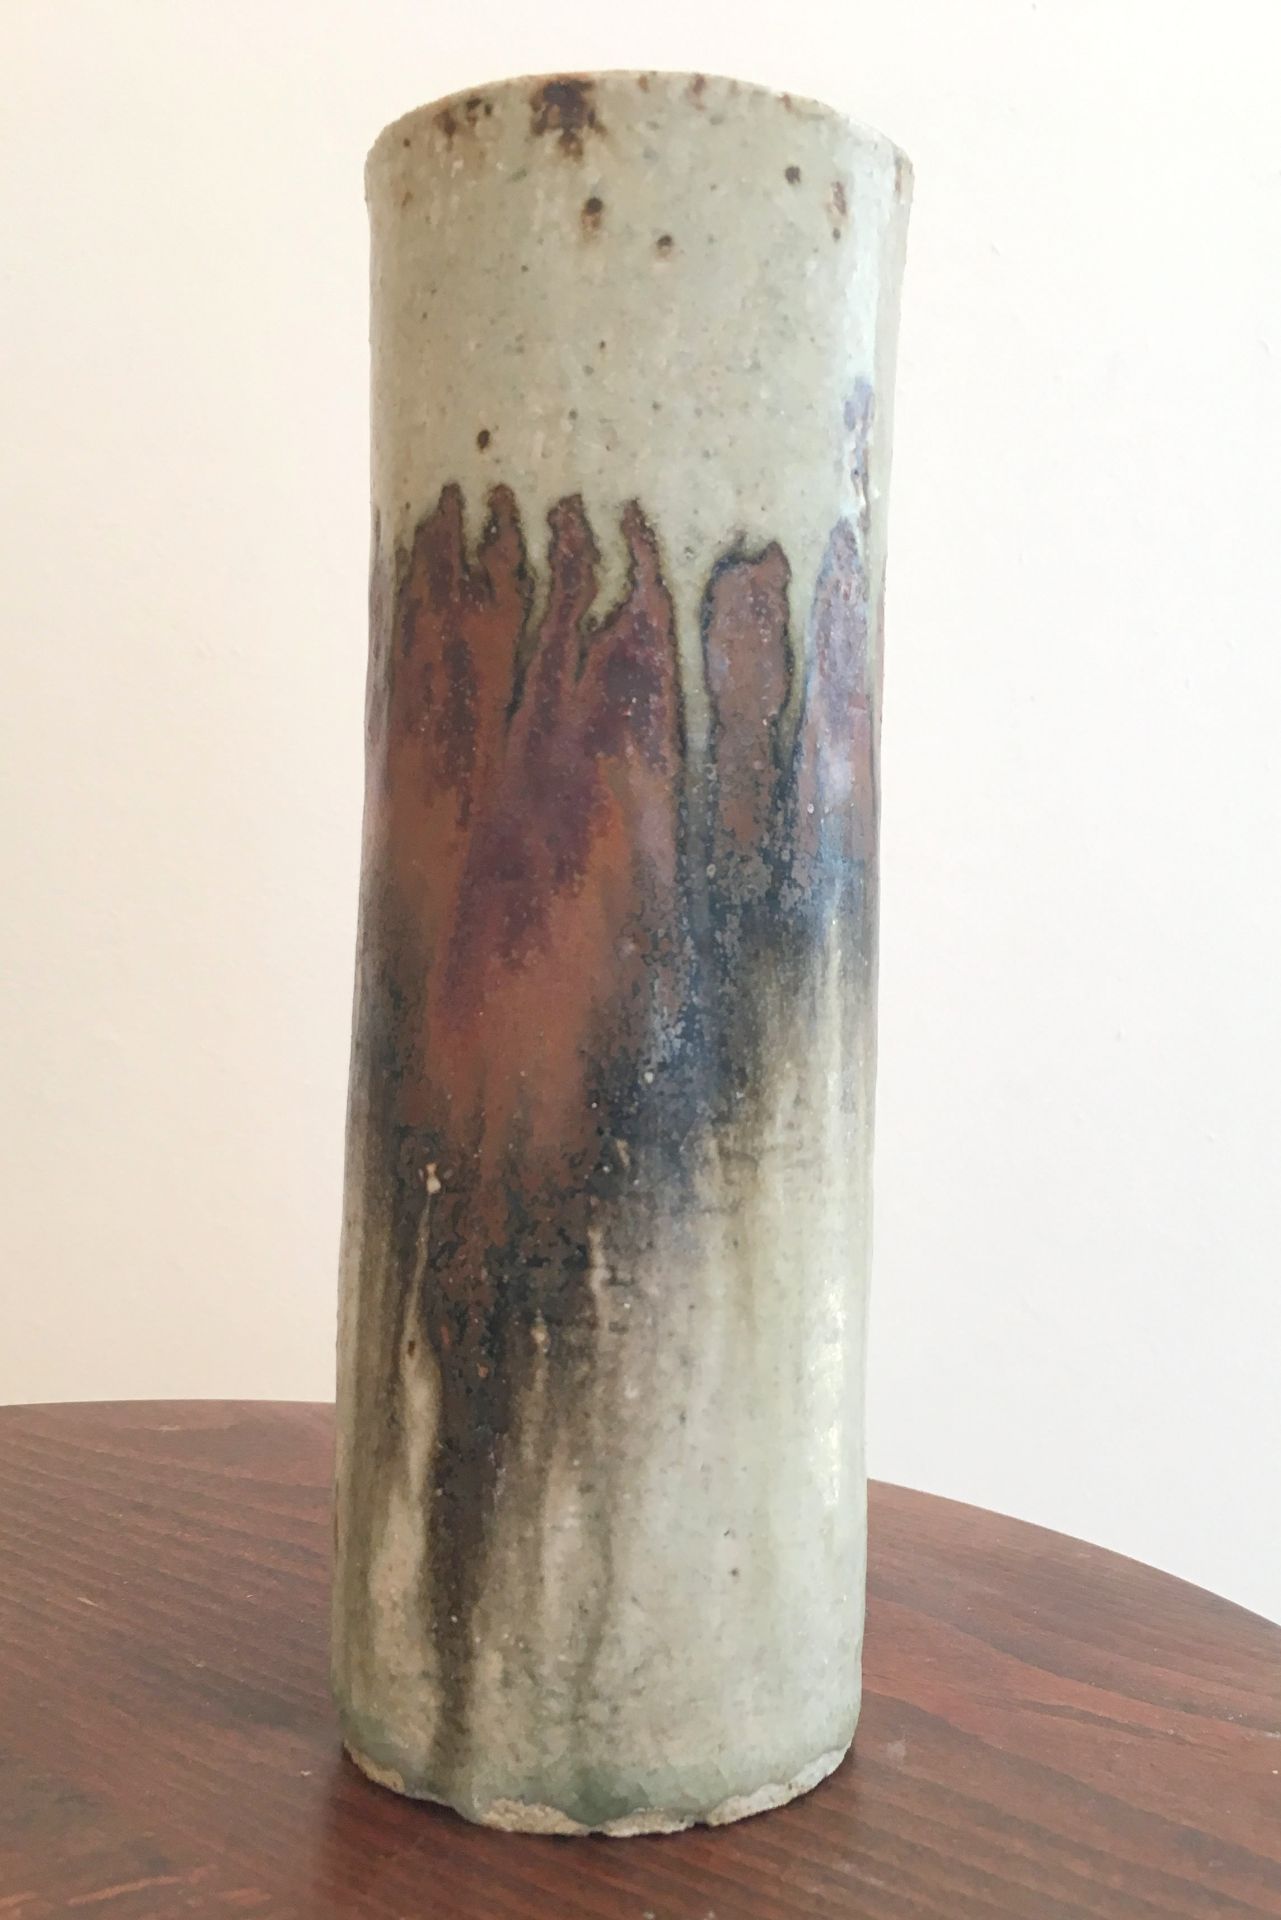 Stoneware Vase signed by Derek Davis 1926-2008